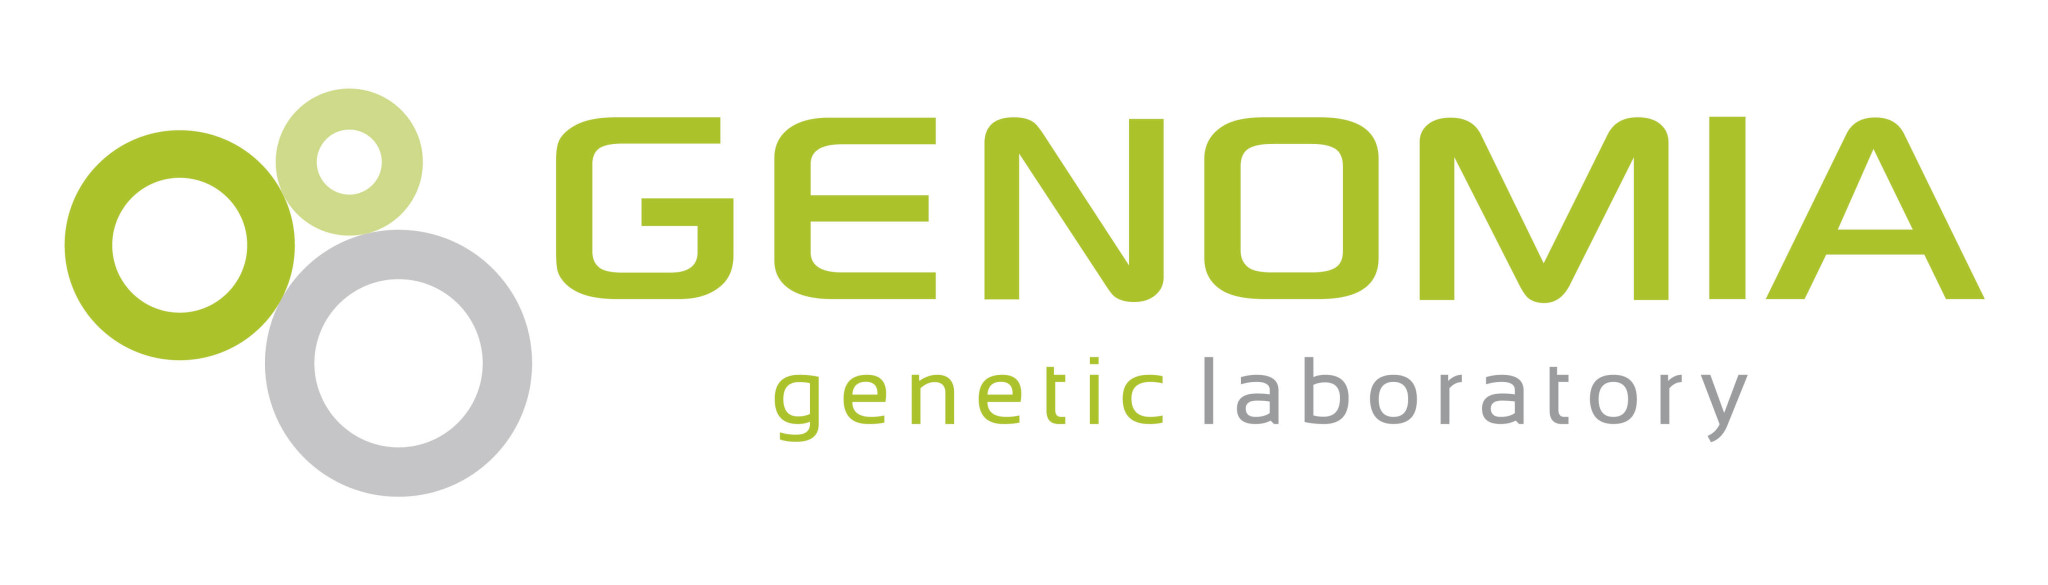 Genomia logo_A3